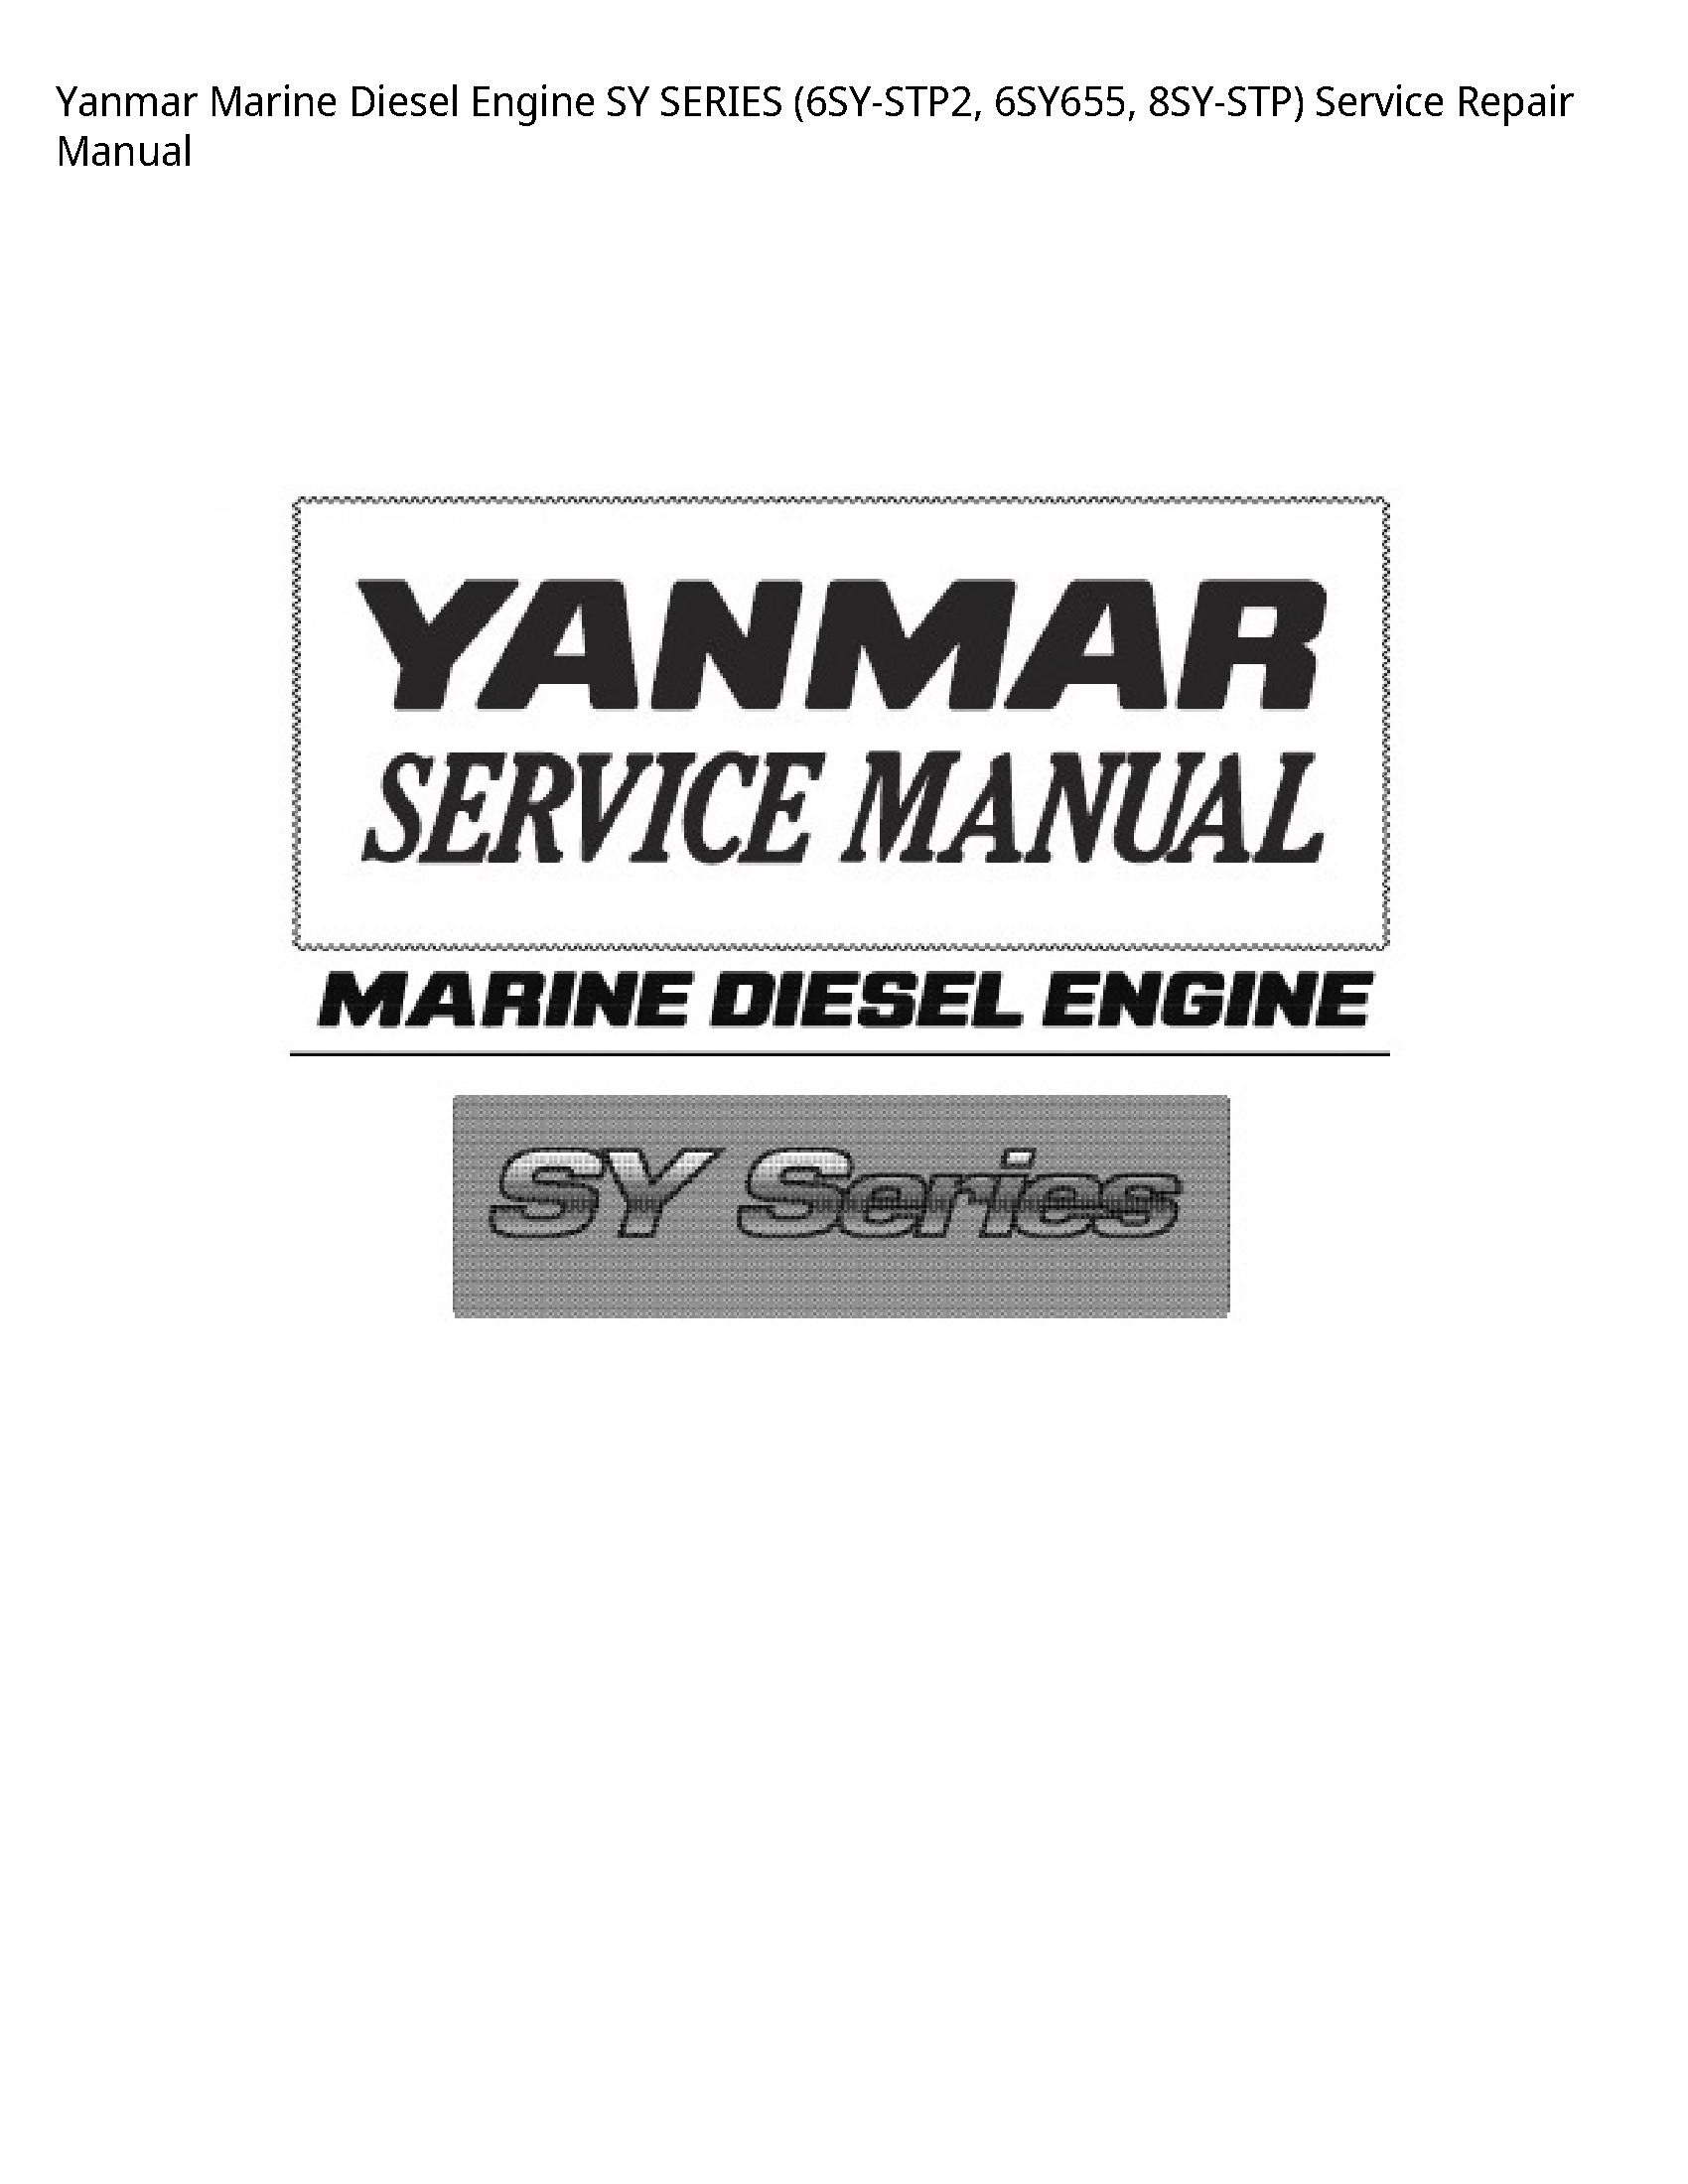 Yanmar (6SY-STP2 Marine Diesel Engine SY SERIES manual